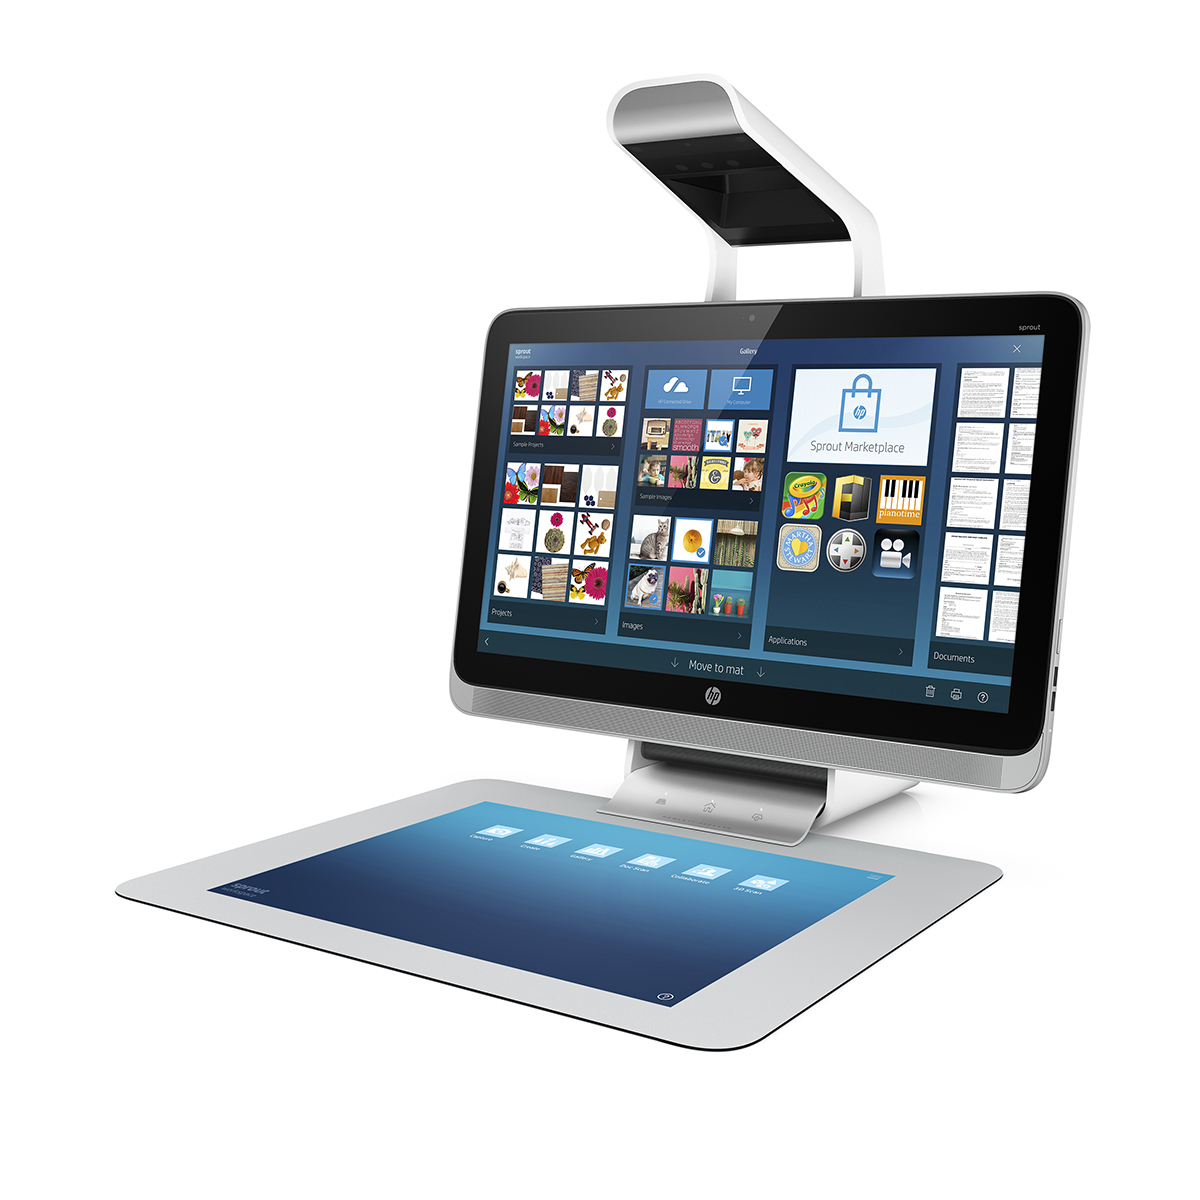 HP propose une réinterprétation du PC de bureau avec cet ordinateur dépourvu de clavier et de souris. Le module Illuminator placé au-dessus de l’écran 23 pouces (58 cm) intègre un projecteur DLP et un scanner 3D. Le système projette l’interface sur le tapis tactile pour que l’utilisateur puisse travailler avec les doigts ou un stylet, et il peut aussi scanner un objet physique en 3D placé sur le tapis. © HP